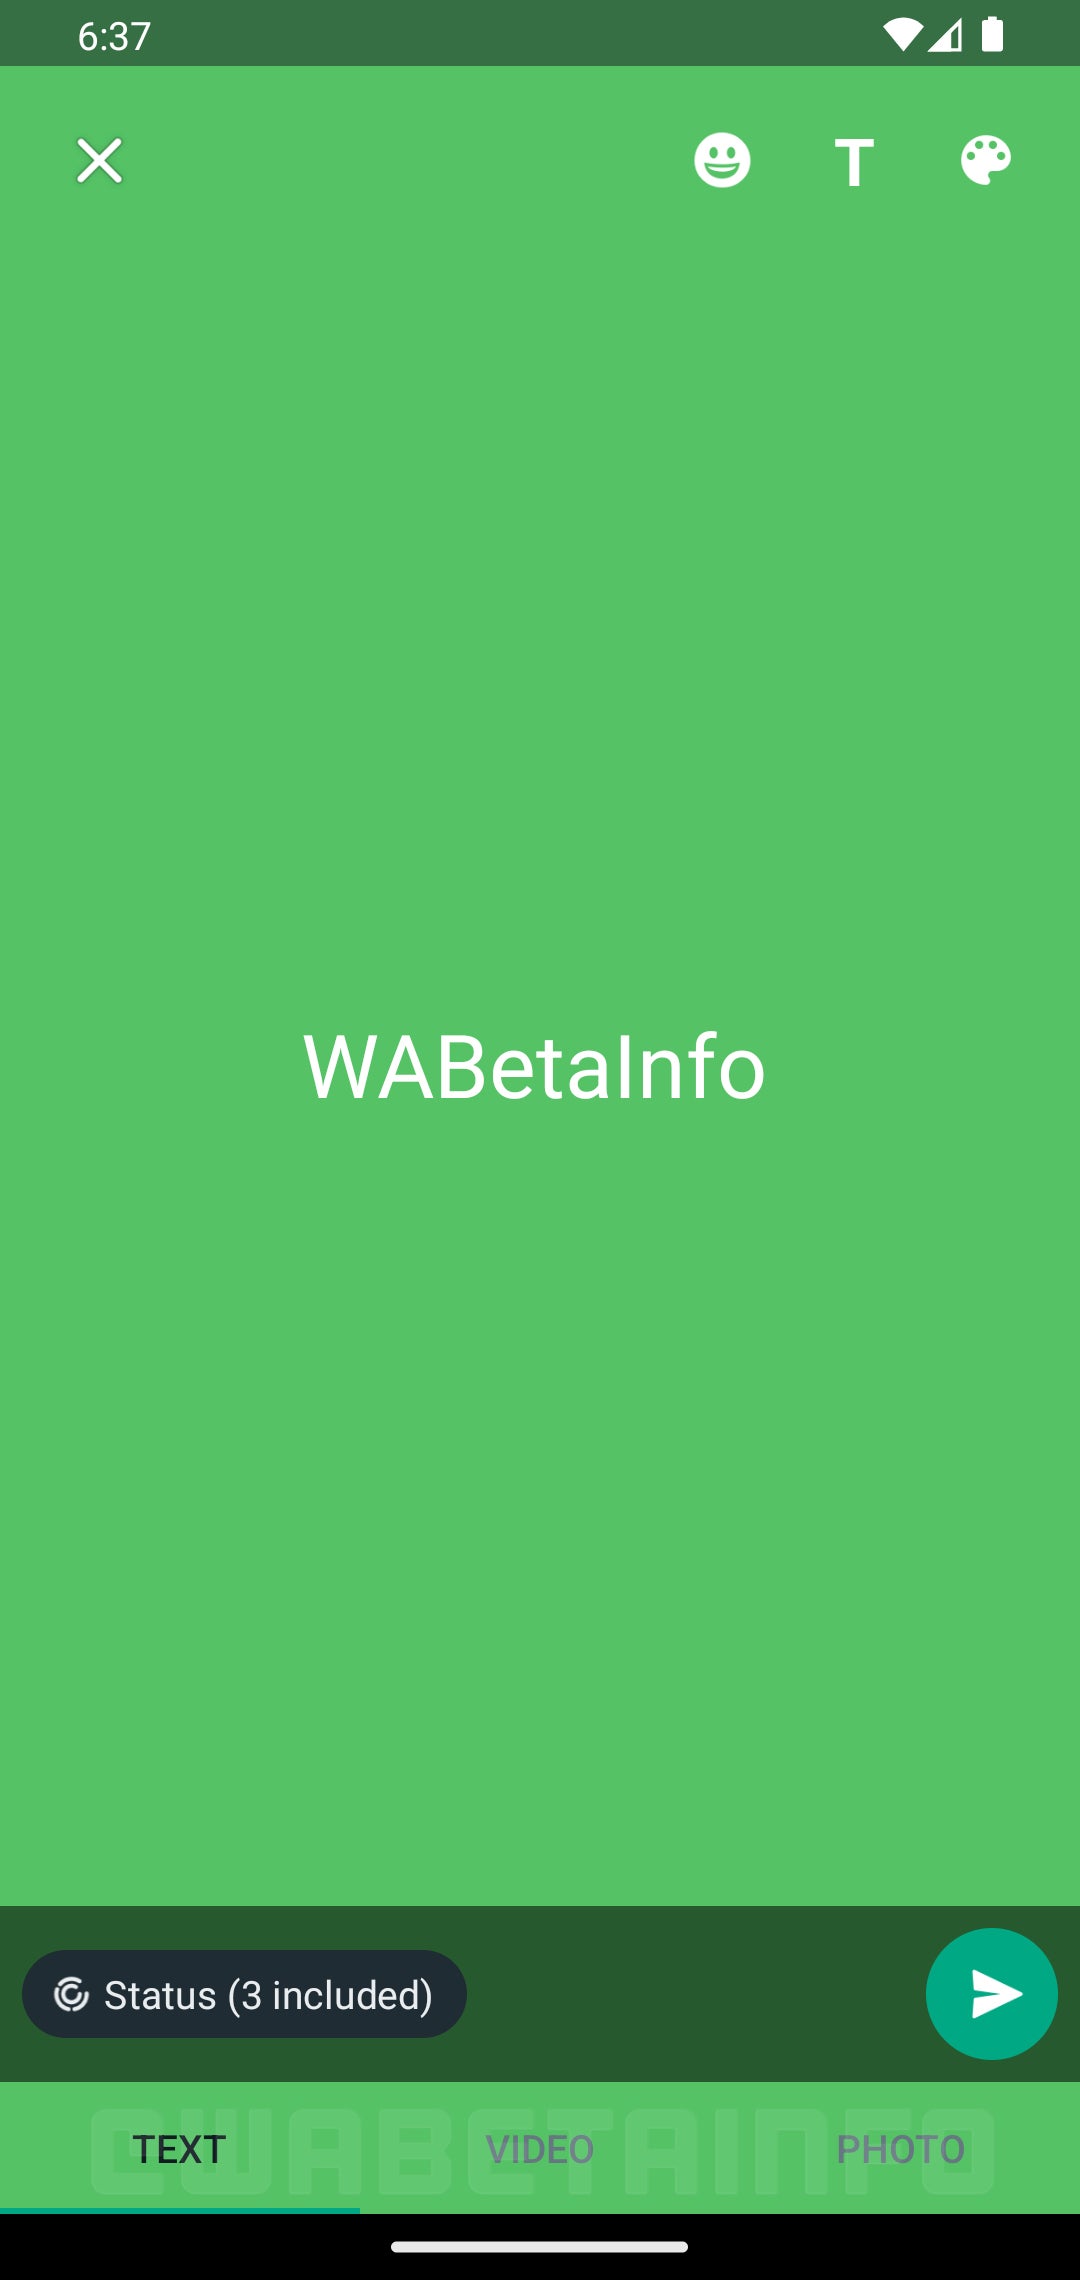 Crédito da imagem – WABetaInfo - O WhatsApp está testando uma nova interface para compartilhar facilmente atualizações de status baseadas em texto